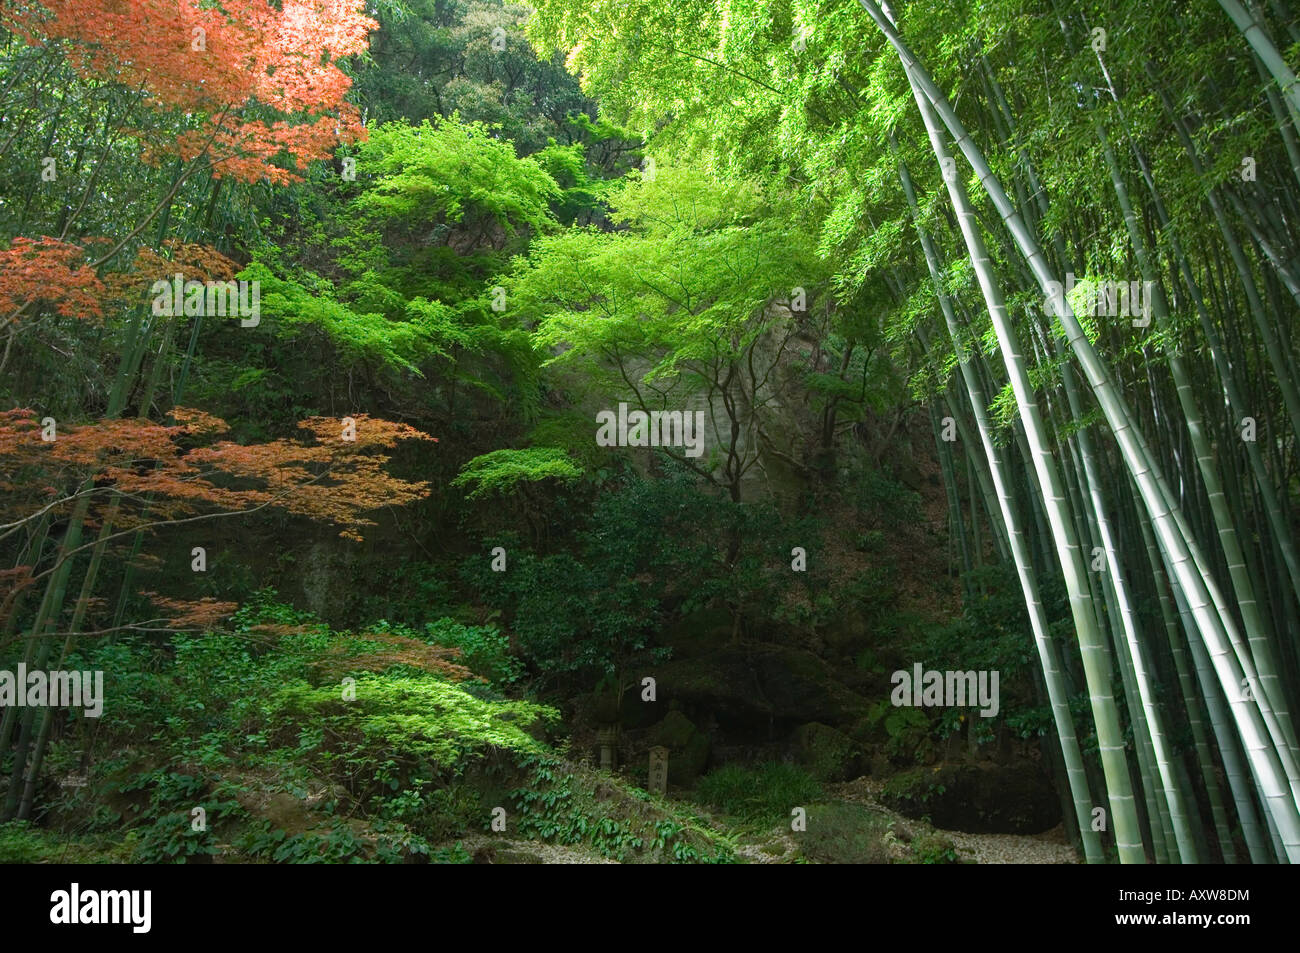 Bamboo forest, Hokokuji temple garden, Kamakura, Kanagawa prefecture,  Japan, Asia Stock Photo